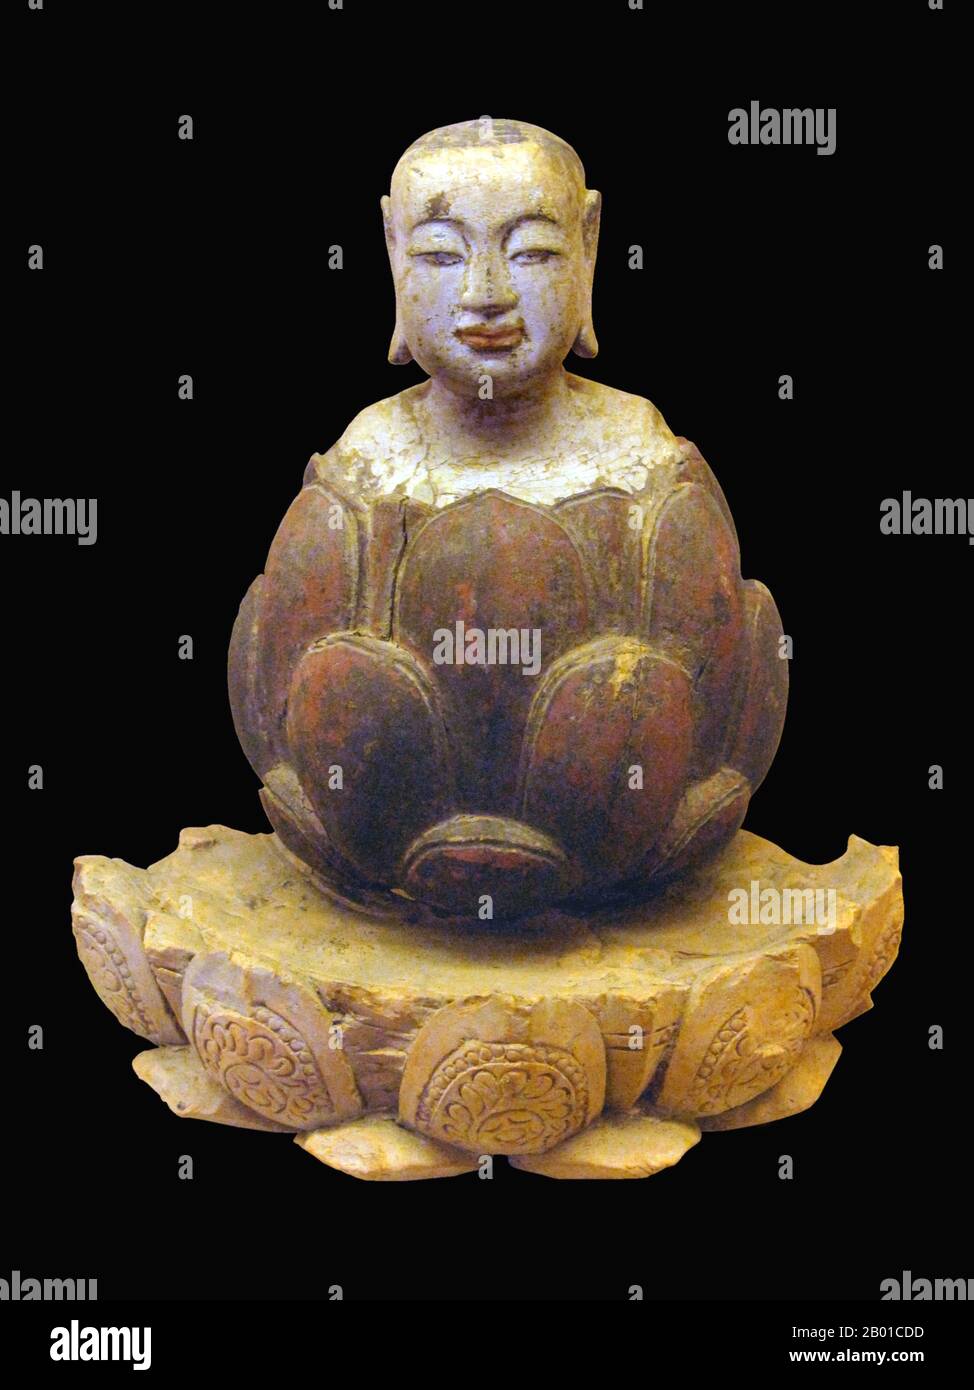 Vietnam: Il ragazzo Buddha che si alza dal loto. Crimson e legno dorato, dinastia Trần-Hồ, 14th-15th ° secolo. Foto di Gryffindor - Jbarta (CC BY-SA 3,0 License). Nel Buddismo, nell'Anguttara Nikaya, il Buddha si paragona ad un loto, affermando che il fiore di loto sorge dall'acqua fangosa non sollizzata, libera dalle contaminazioni insegnate nella sutta specifica. Perciò il loto rappresenta simbolicamente la purezza del corpo, del linguaggio e della mente, galleggiando oltre l'attaccamento materiale e il desiderio fisico. I troni di loto sono il normale piedistallo per le figure buddiste più importanti dell'arte Foto Stock